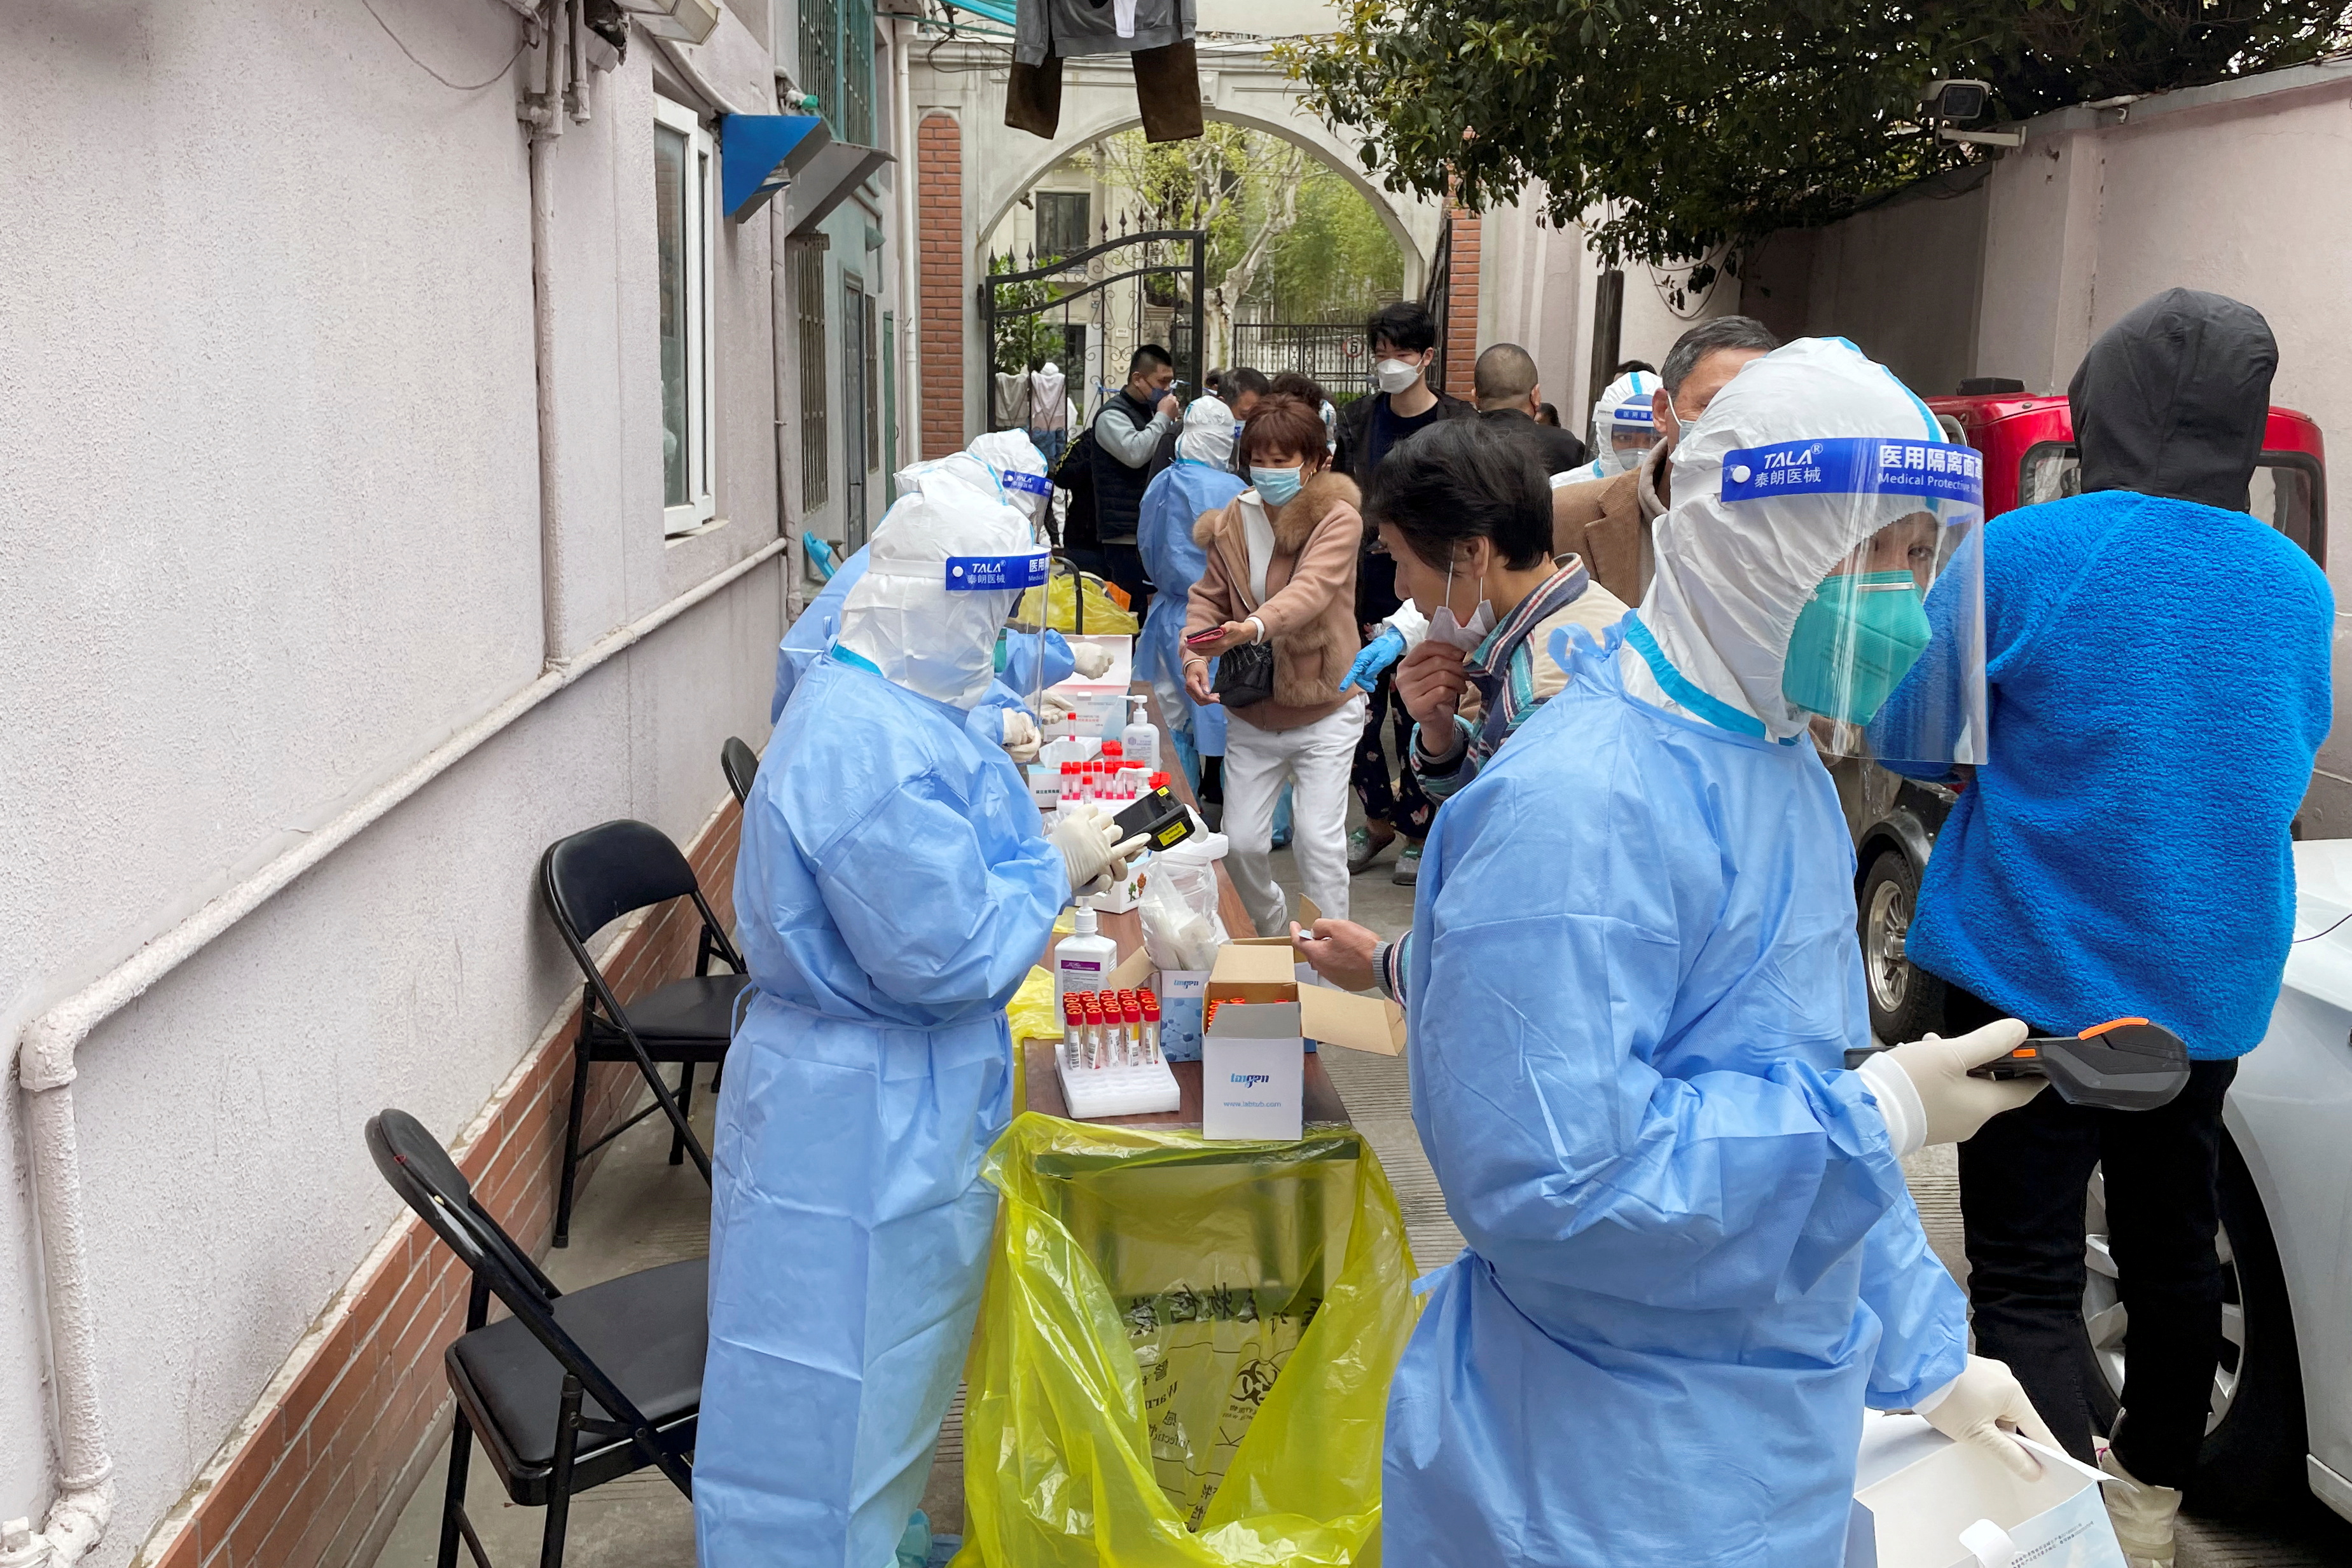 FOTO DE ARCHIVO: Trabajadores médicos con trajes protectores administran pruebas de ácido nucleico a residentes en un complejo residencial, mientras comienza la segunda etapa de un cierre de dos etapas para frenar la propagación de la enfermedad por coronavirus (COVID-19) en Shanghai. REUTERS/Brenda Goh/Foto de archivo